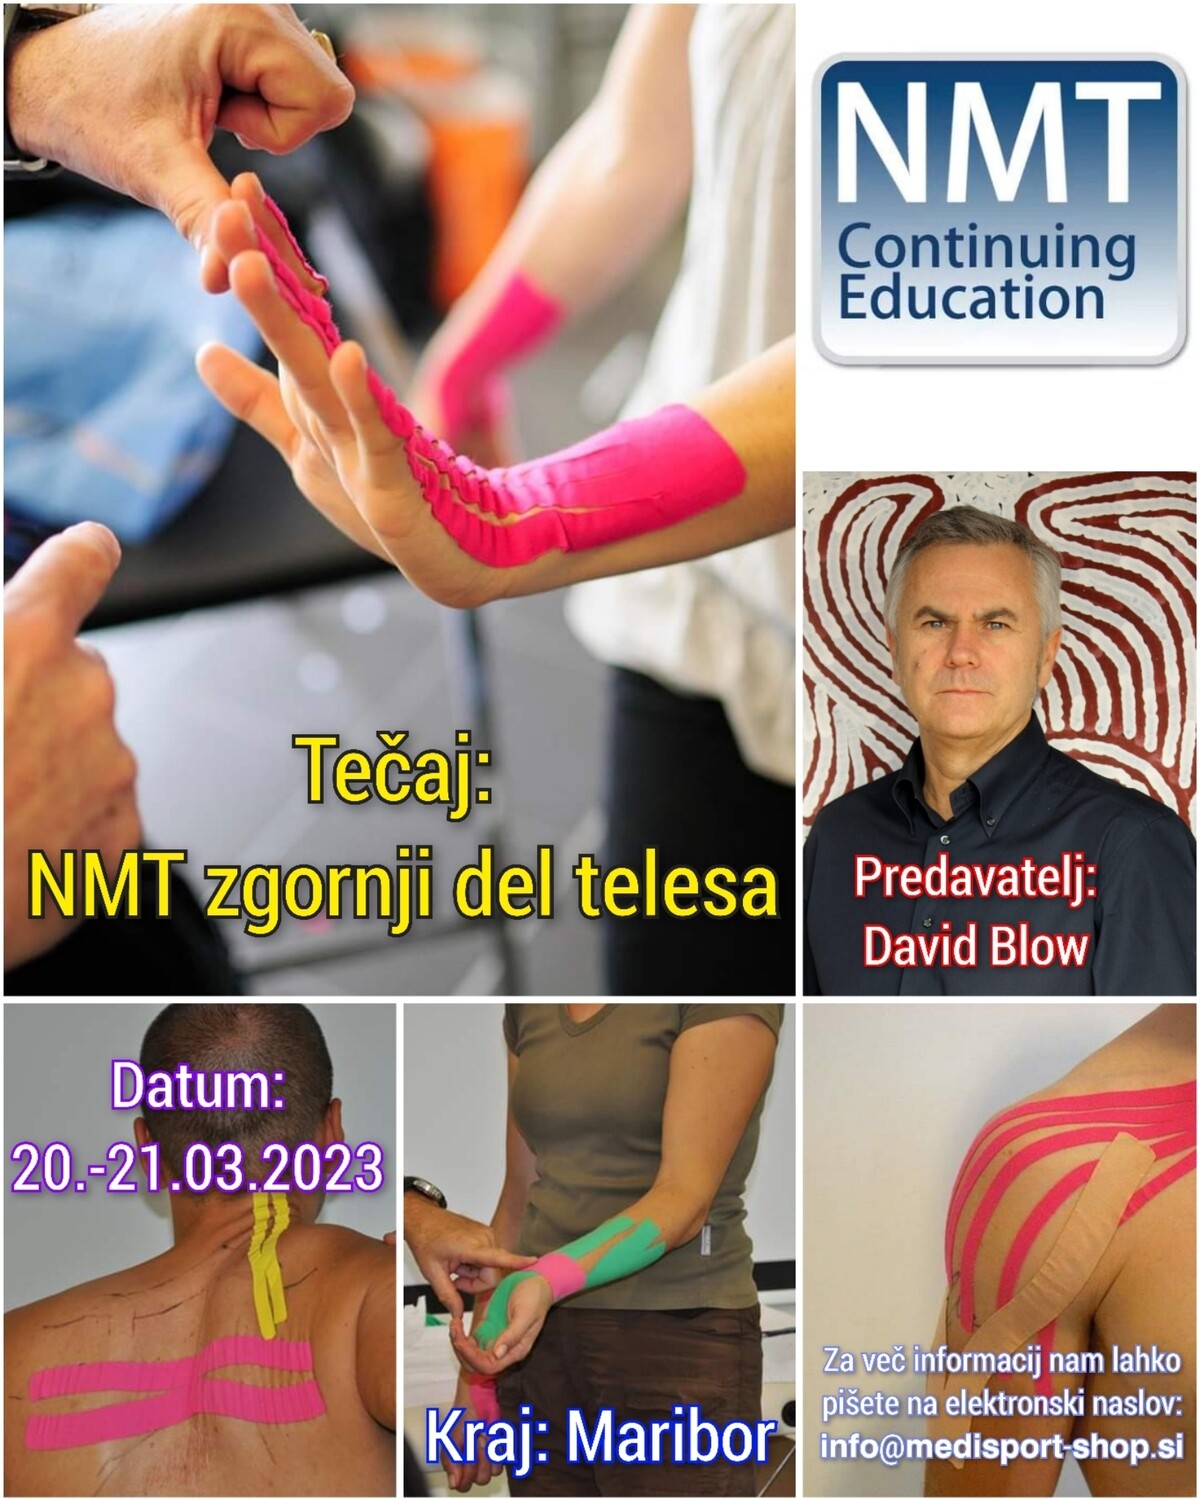 Tečaj: NMT zgornji in spodnji del telesa (20.-23.03.2023, Maribor in Ljubljana)